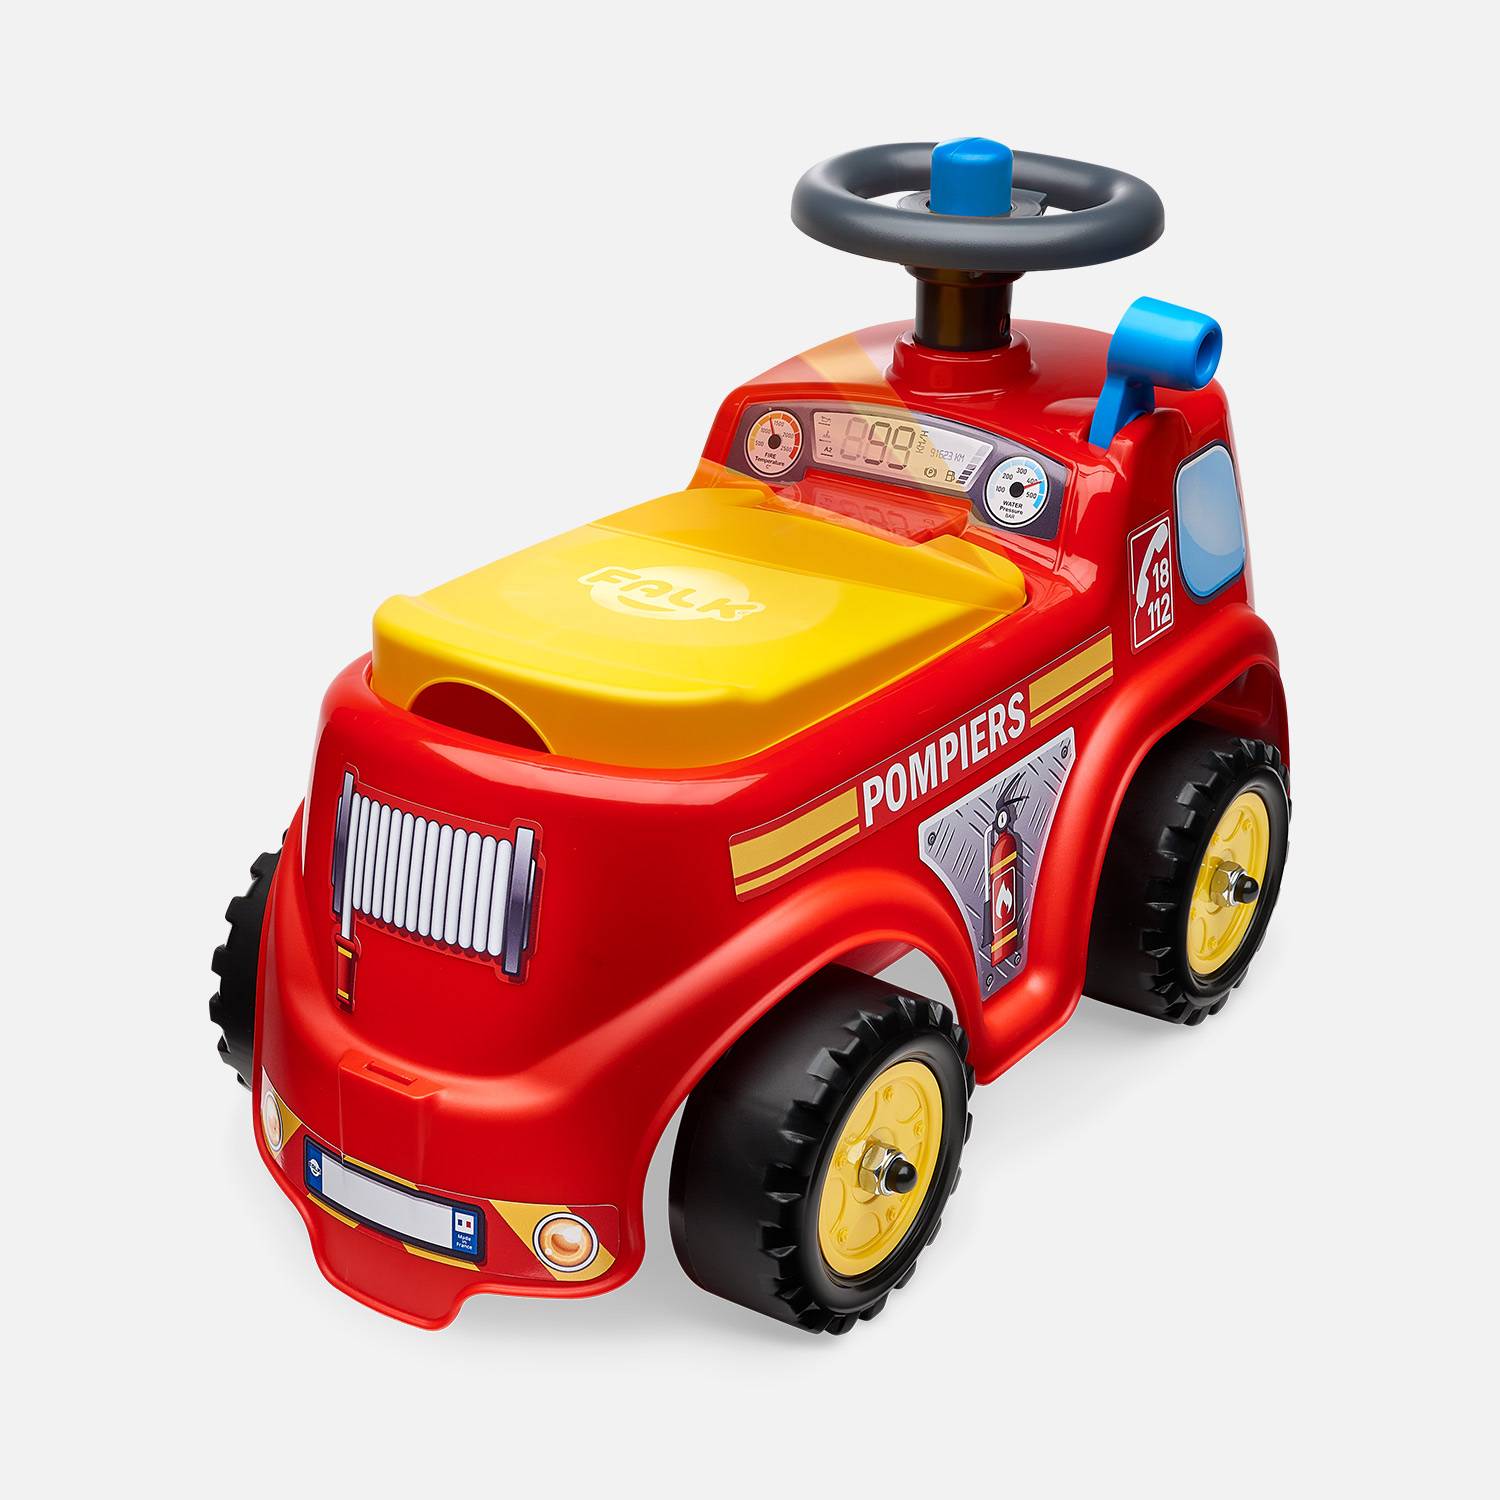 Babyrutscher Feuerwehrwagen mit aufklappbaren Sitz und Lenkrad, mit Hupe, 100% Made in France Photo2